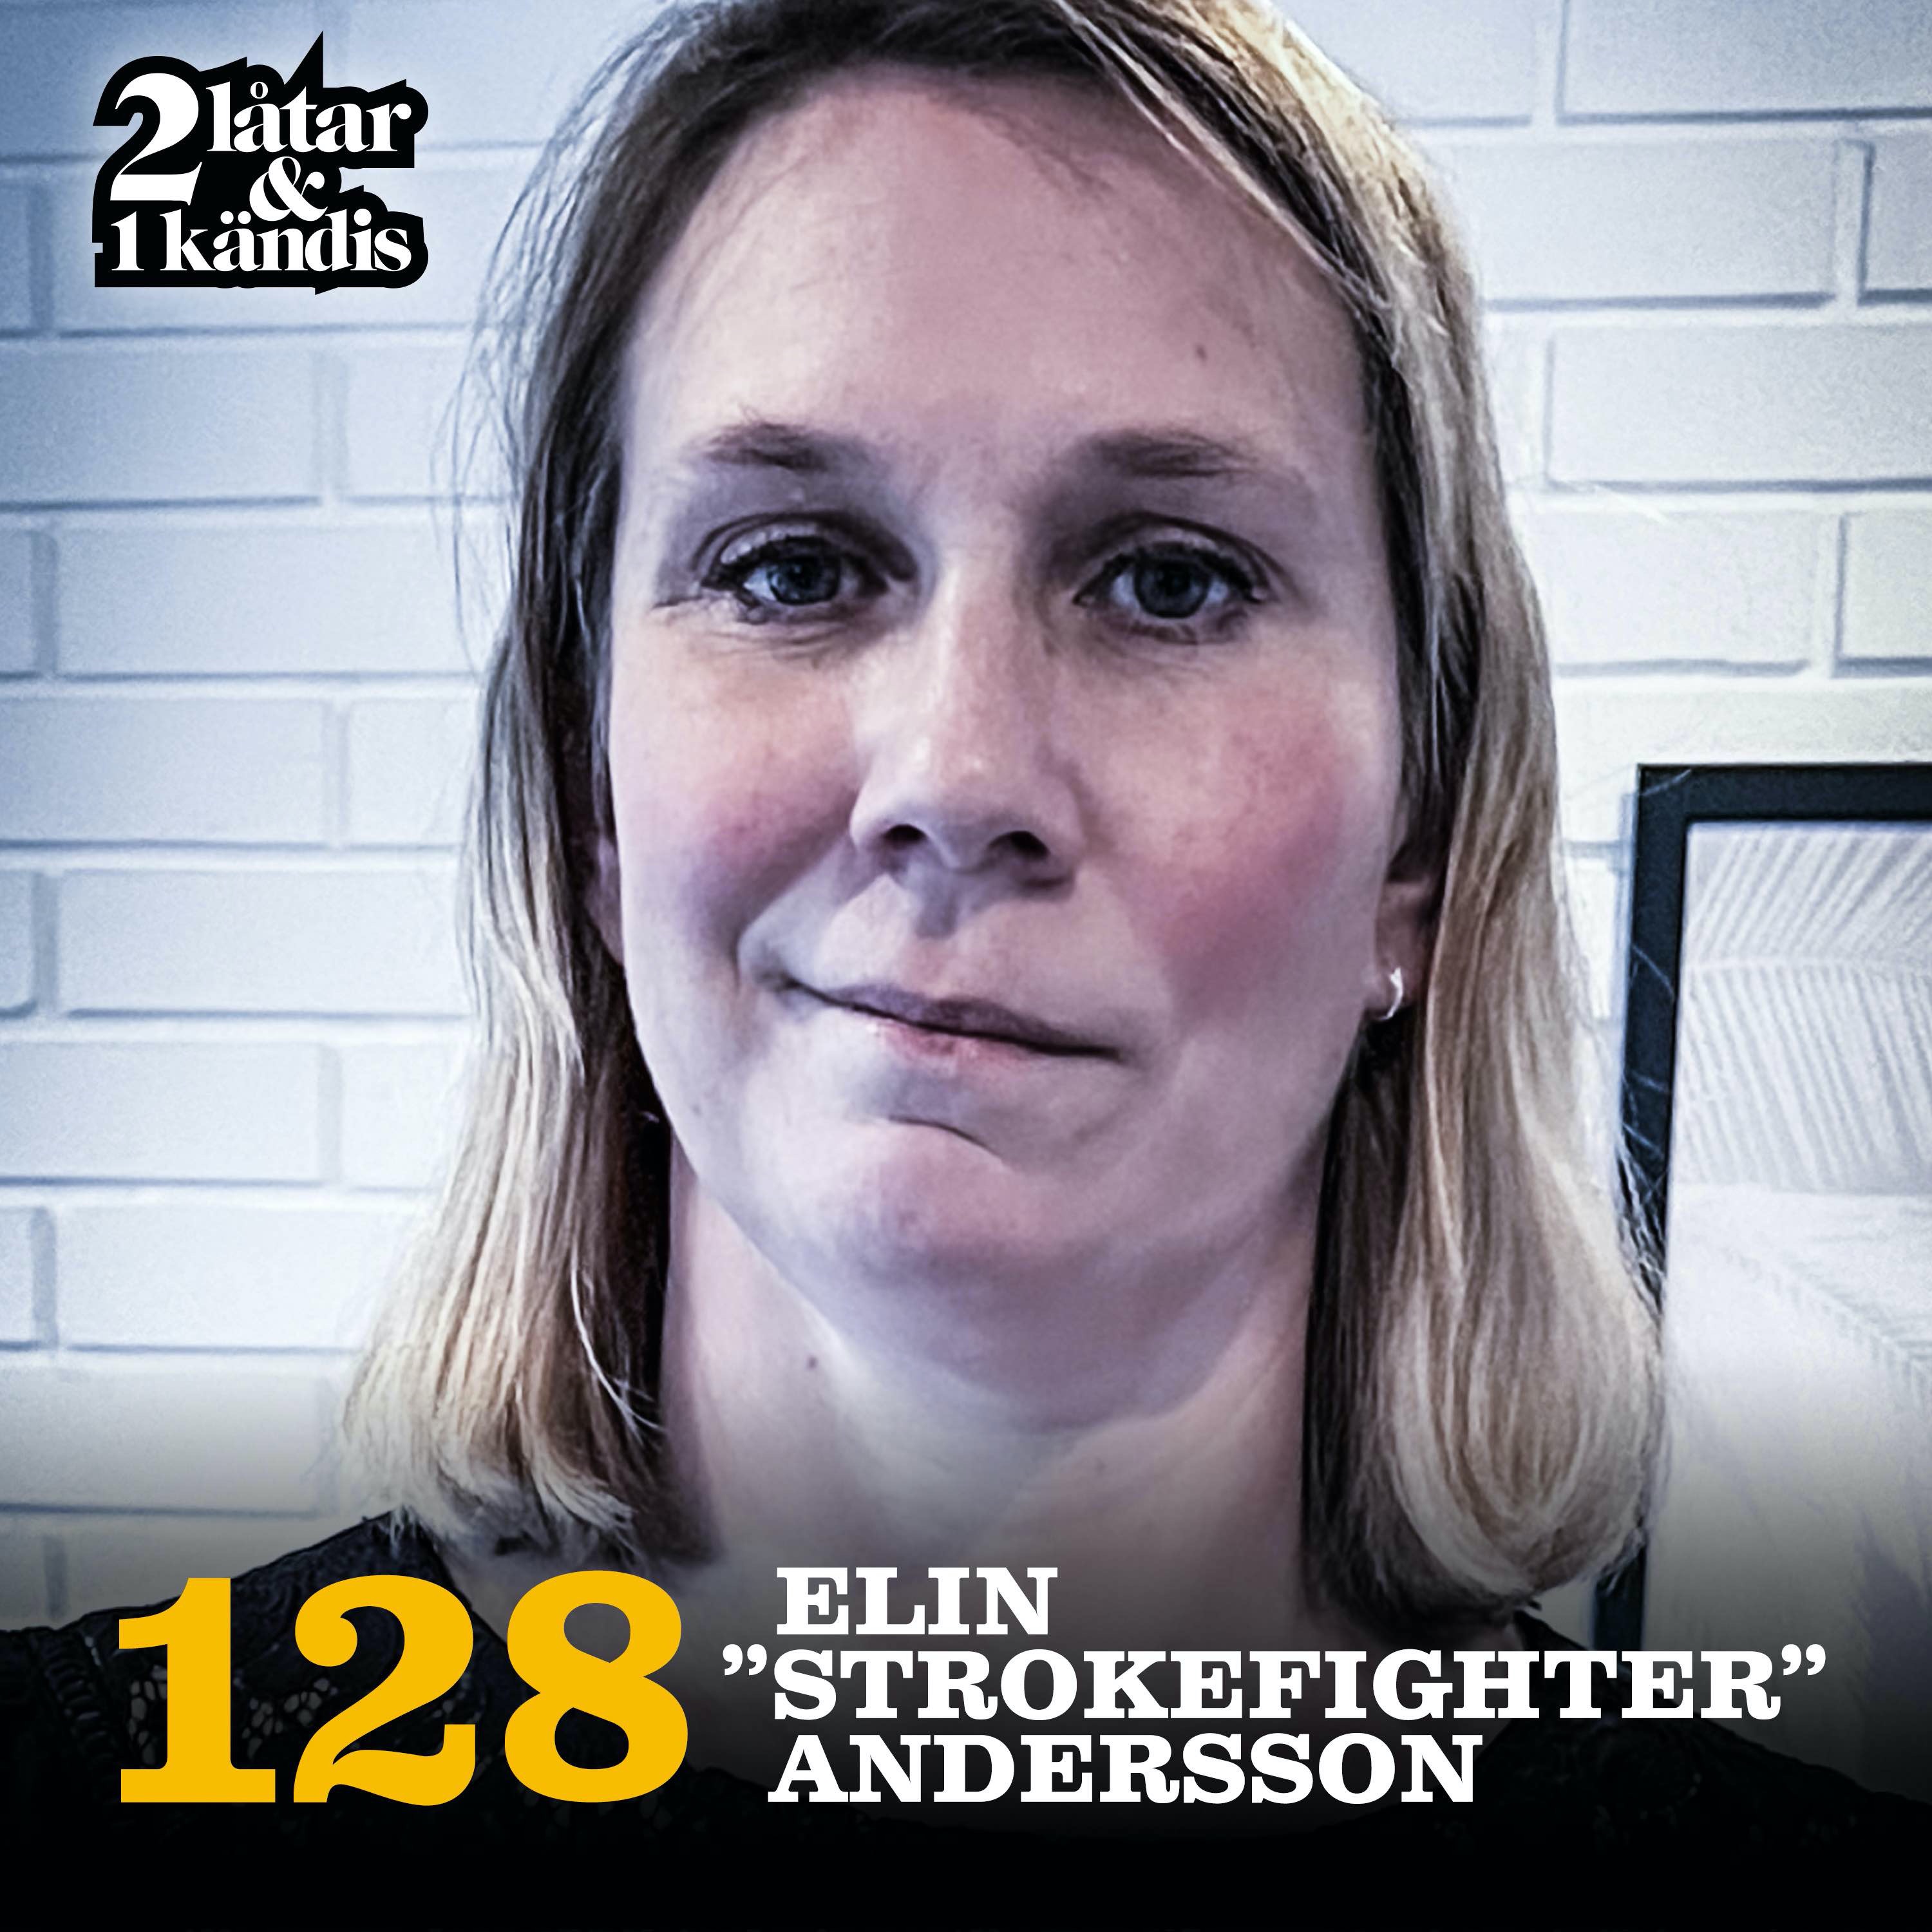 Elin ”Strokefighter” Andersson